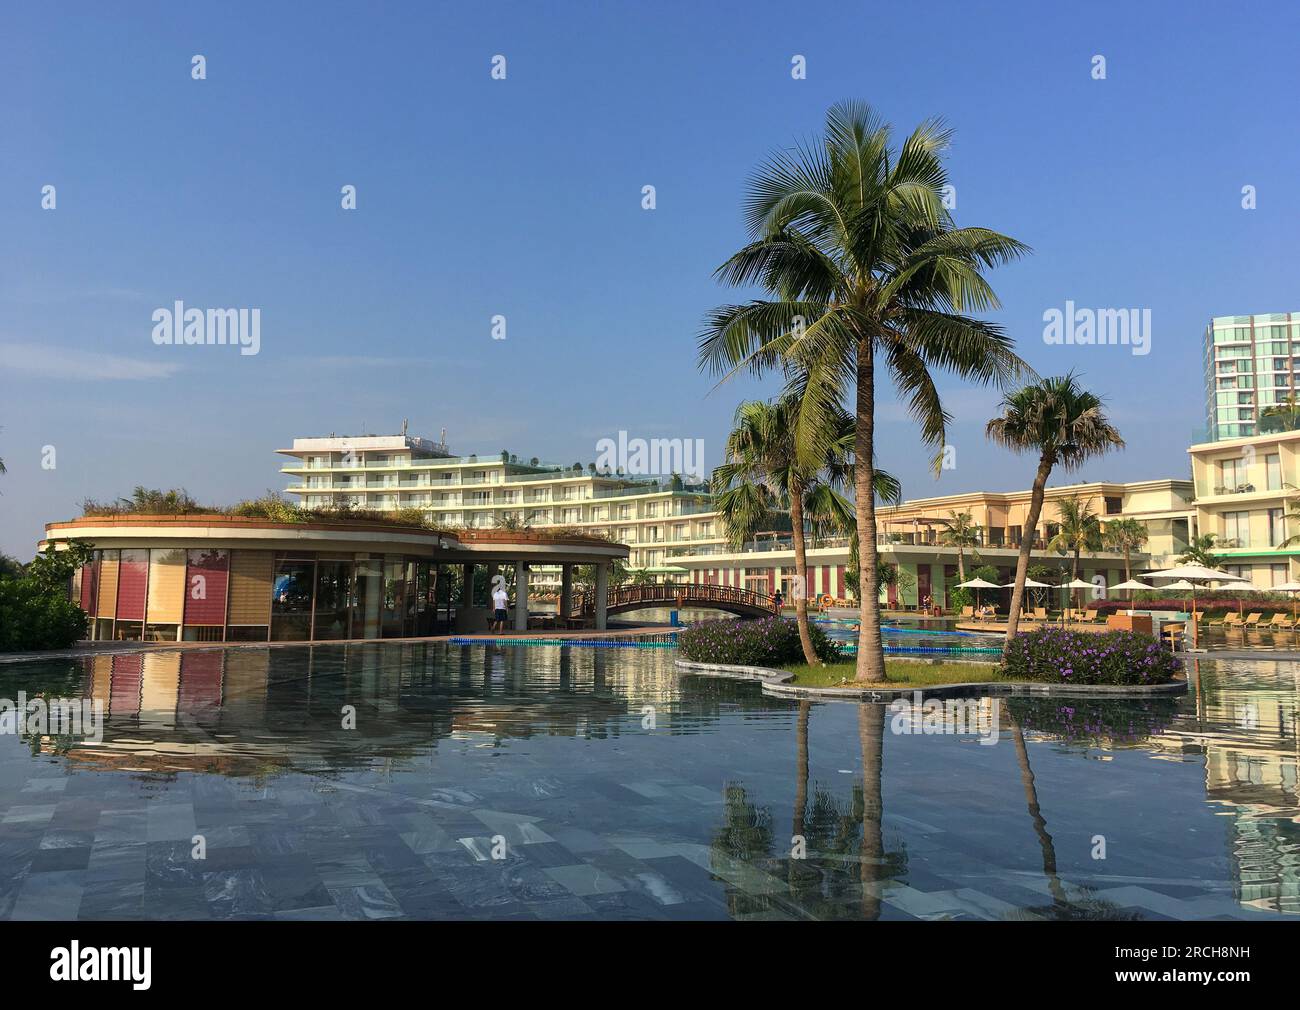 Khu nghỉ dưỡng và bất động sản FLC Sầm Sơn Thanh Hóa. FLC Resort & Real Estate in Sam Son Thanh Hoa Stock Photo